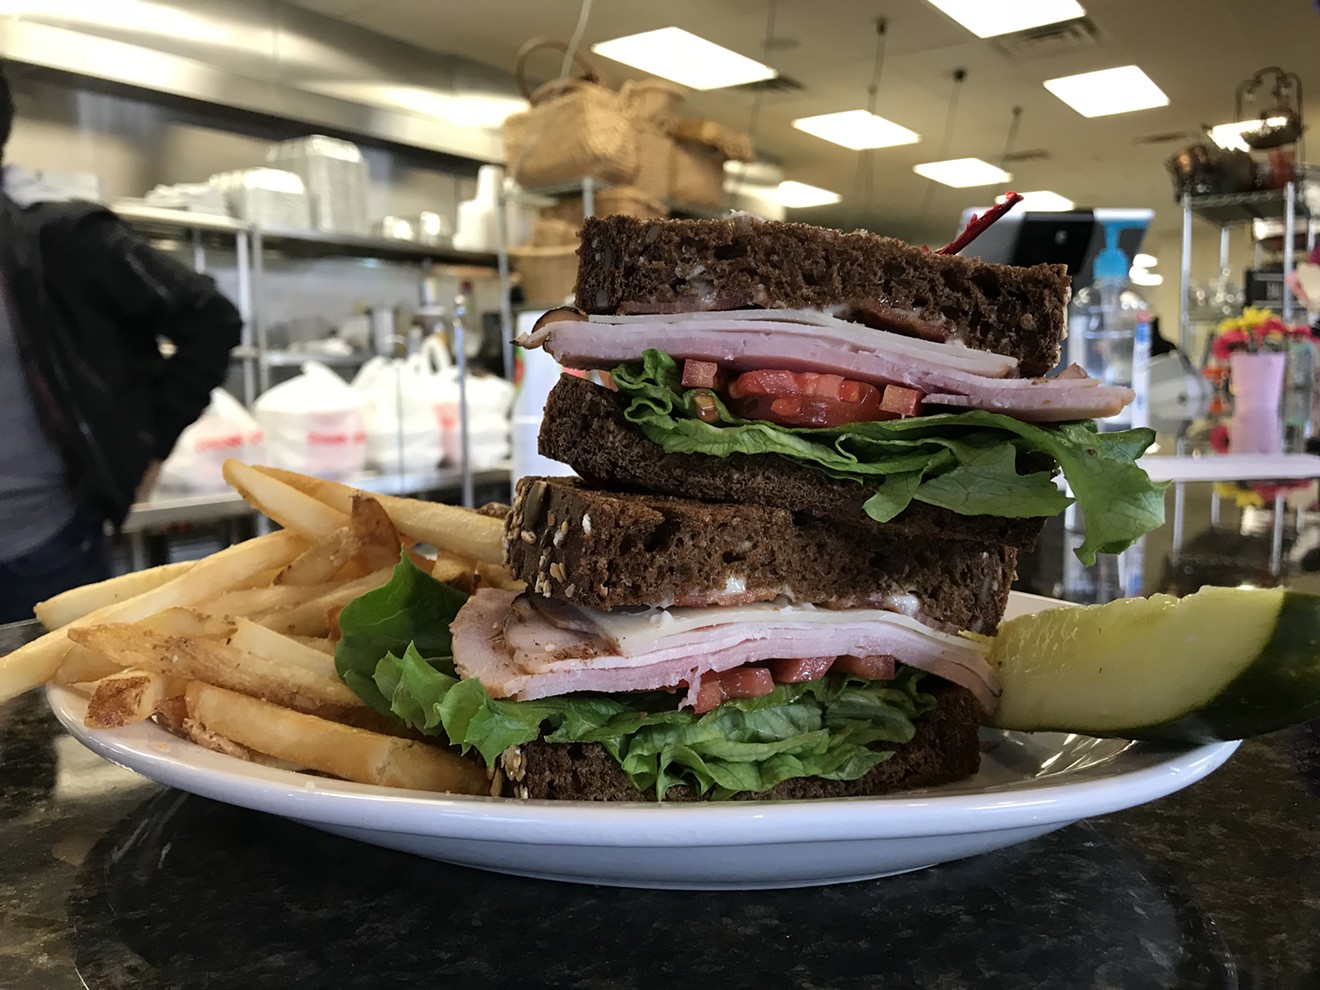 Freshella's Corporate Club is a massive $9 sandwich.